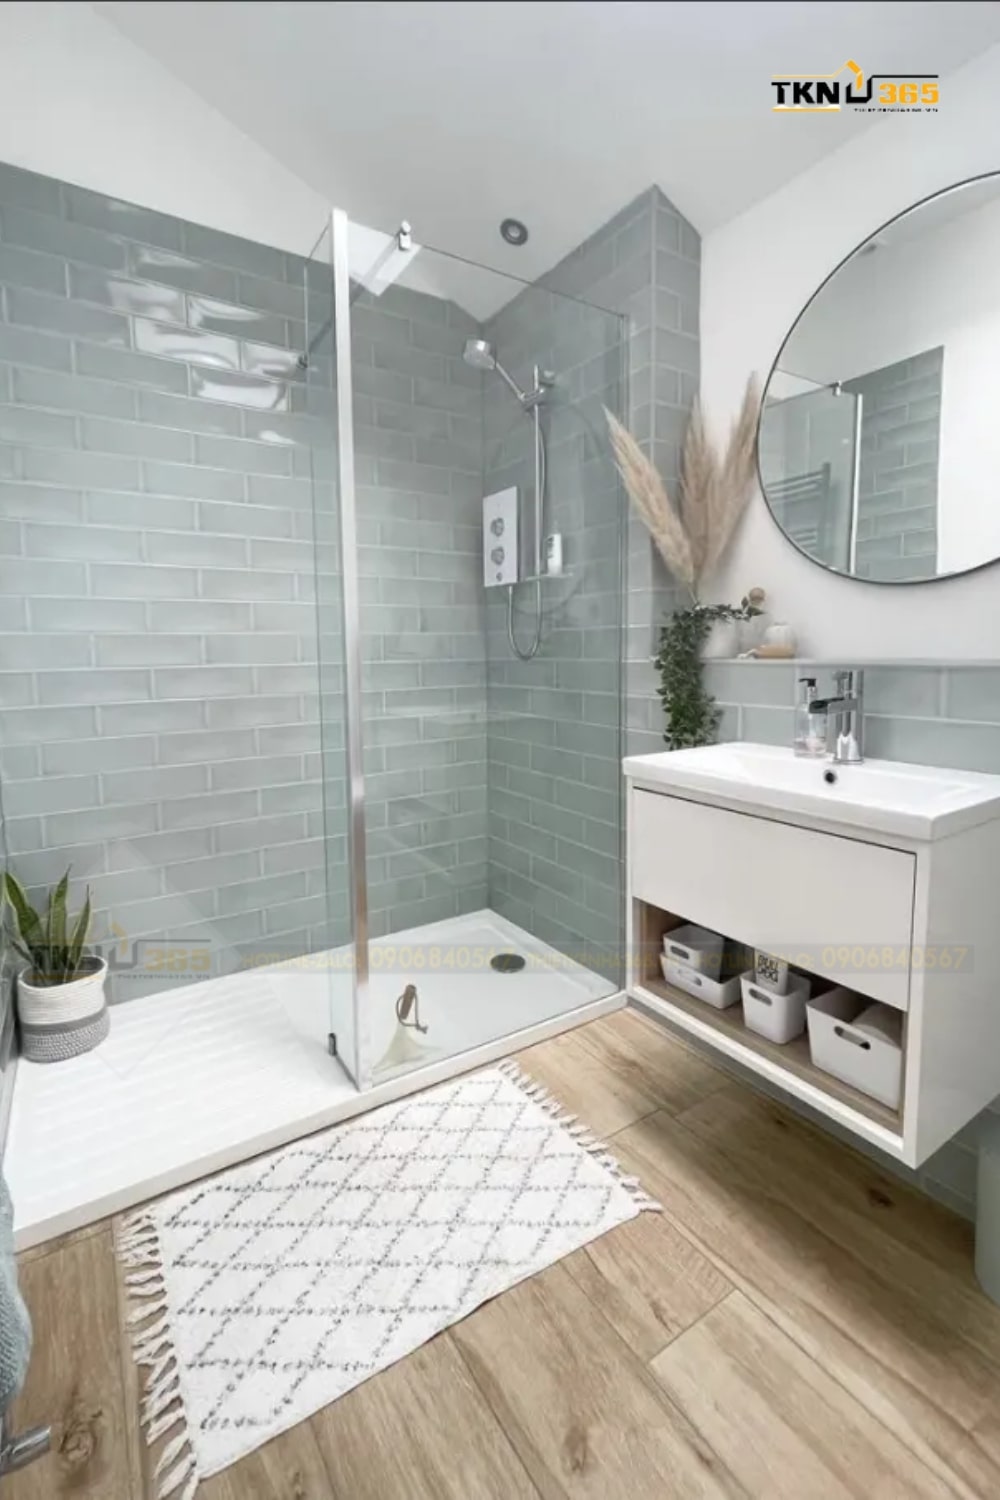 Phòng tắm này được thiết kế với các tông màu mộc mạc và đơn giản như xám và nâu, dùng sàn và tủ gỗ để tạo nên một không gian ấm áp và thân thiện